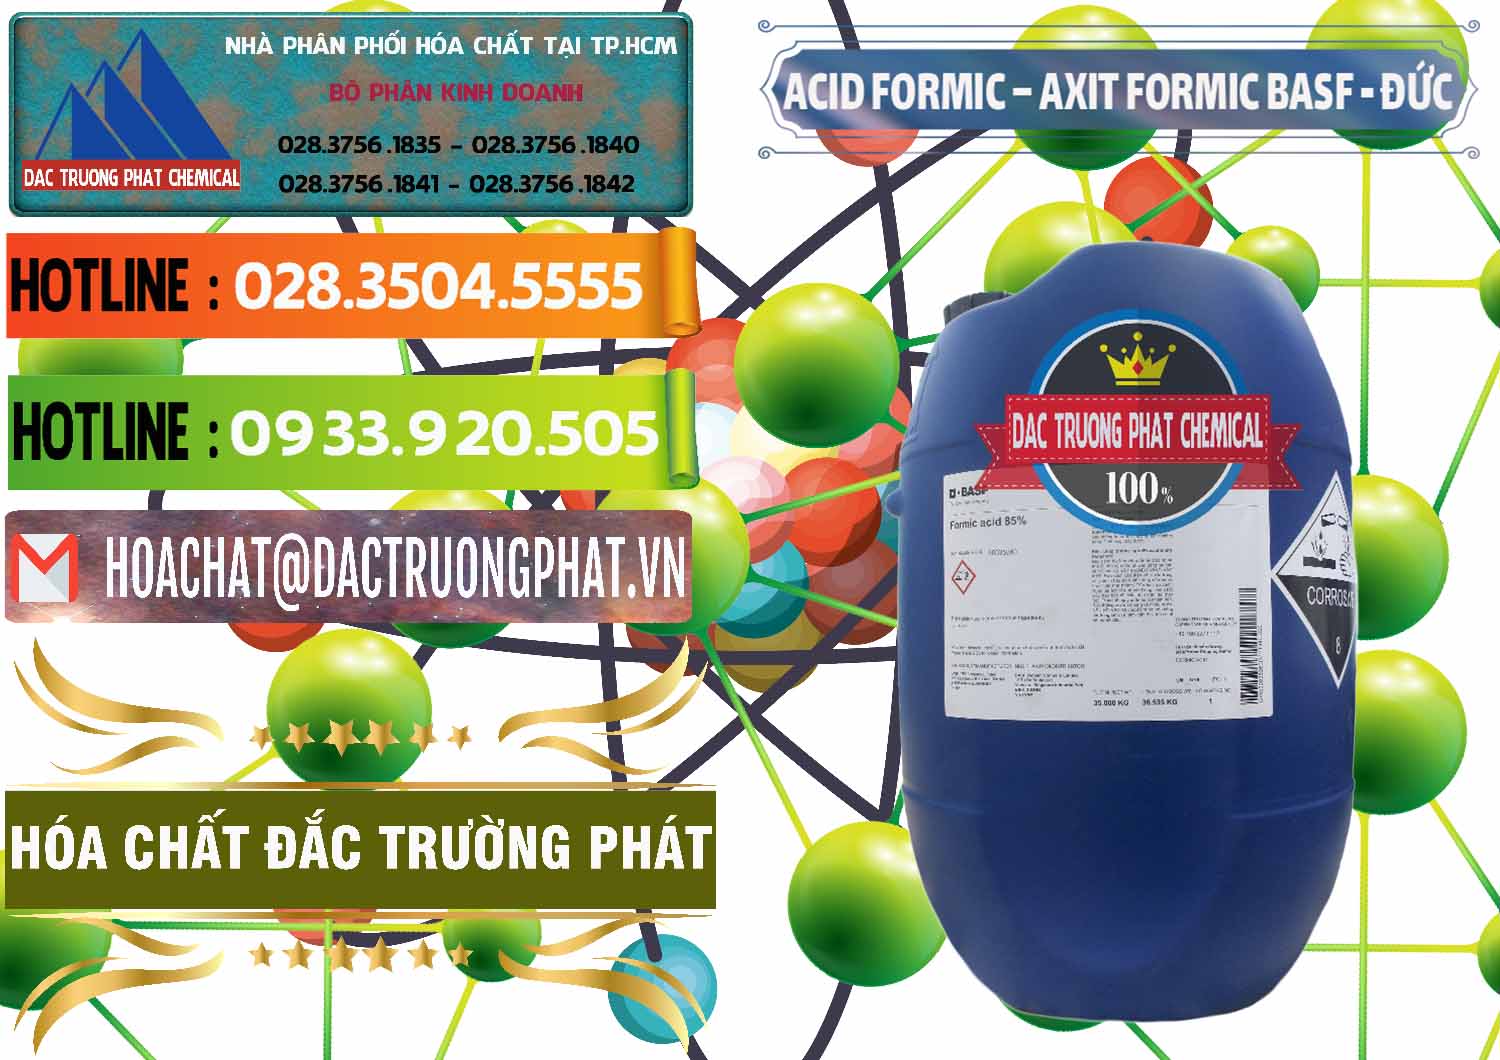 Chuyên cung ứng & bán Acid Formic - Axit Formic BASF Đức Germany - 0028 - Công ty chuyên cung cấp và bán hóa chất tại TP.HCM - cungcaphoachat.com.vn